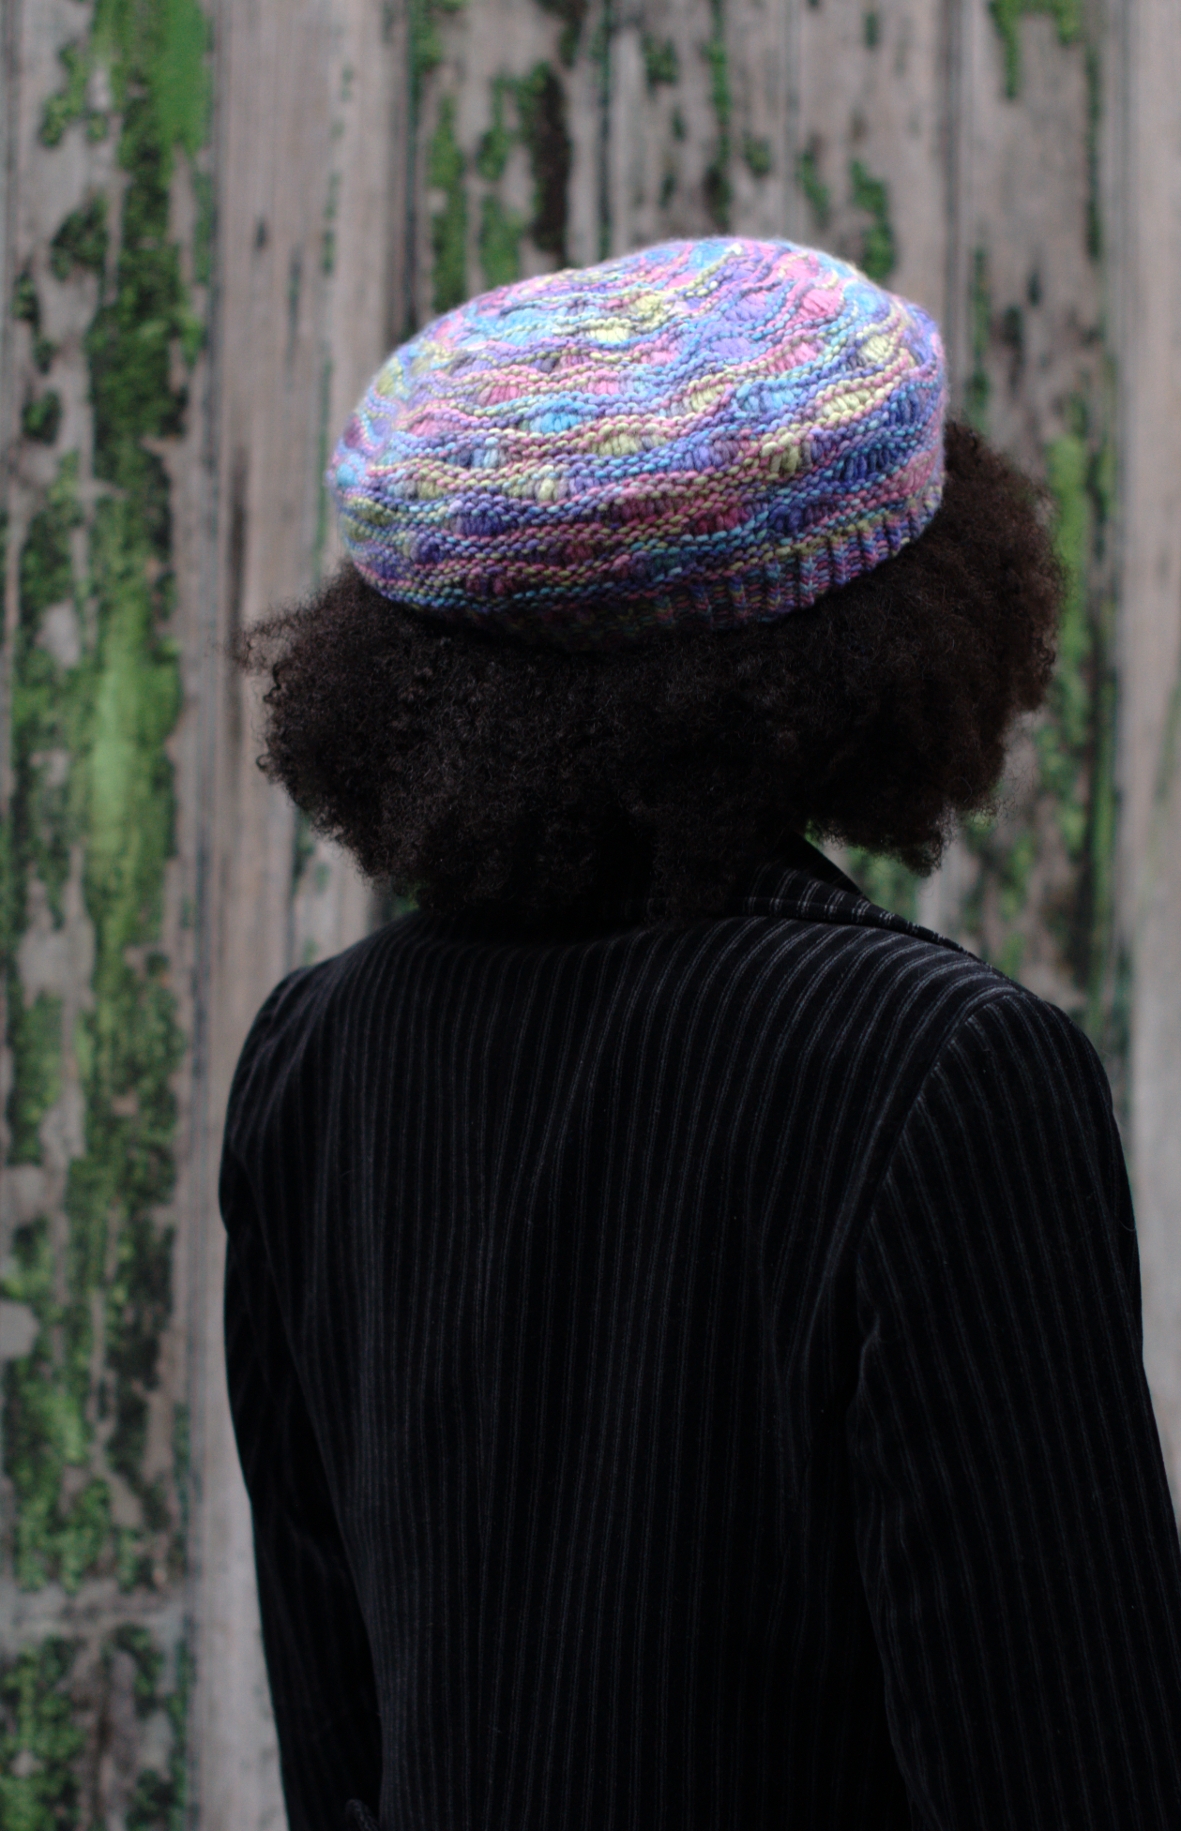 Jetty lace beret knitting pattern